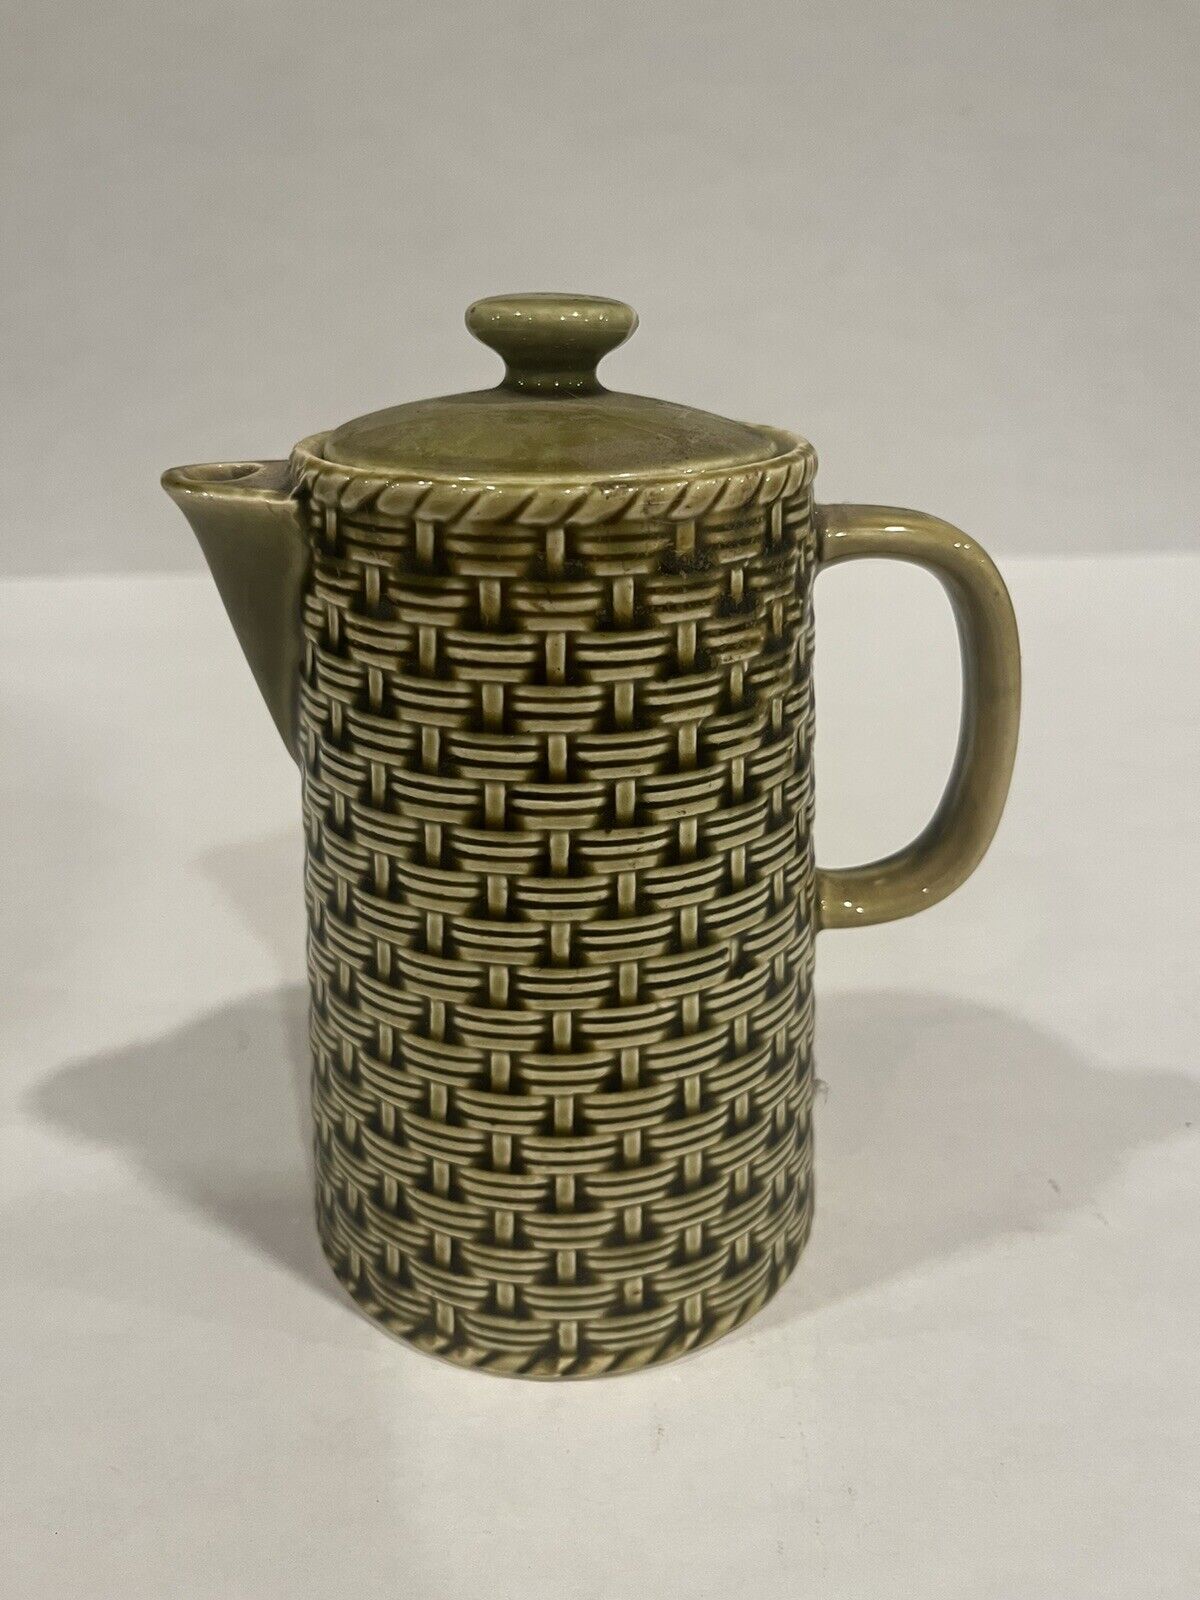 Vintage Ceramic Japan Basket Weave Design Coffee Or Tea Server